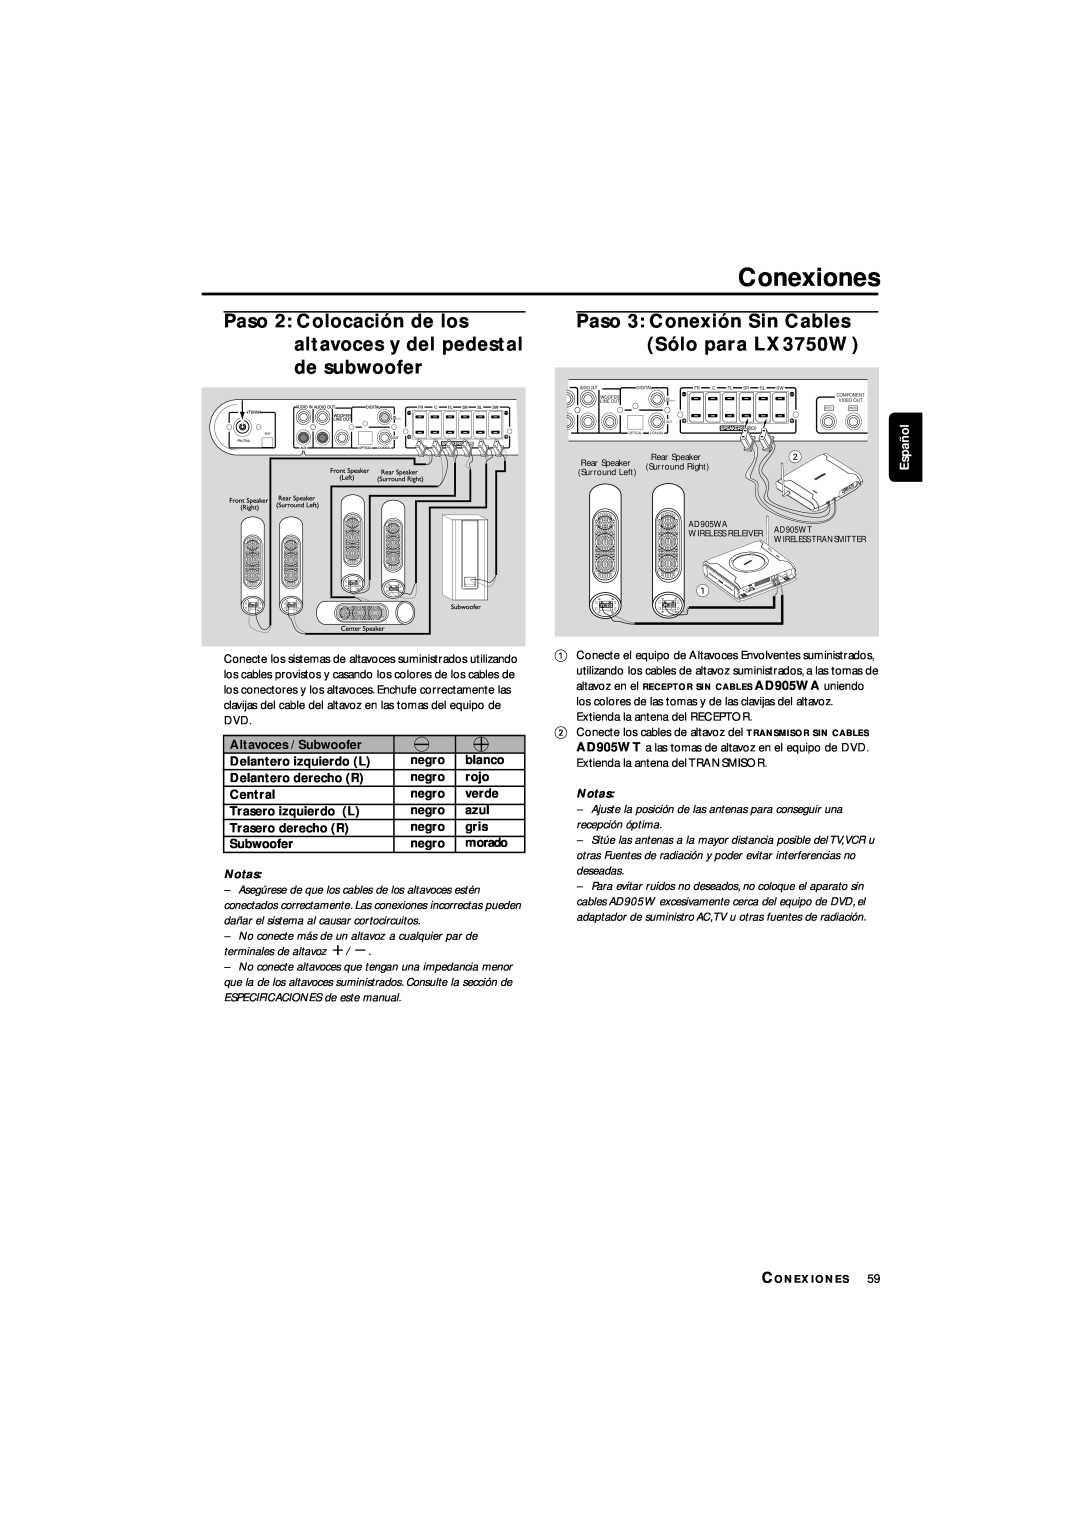 Philips LX3700D manual Conexiones, Paso 3 Conexión Sin Cables Sólo para LX3750W, Español 